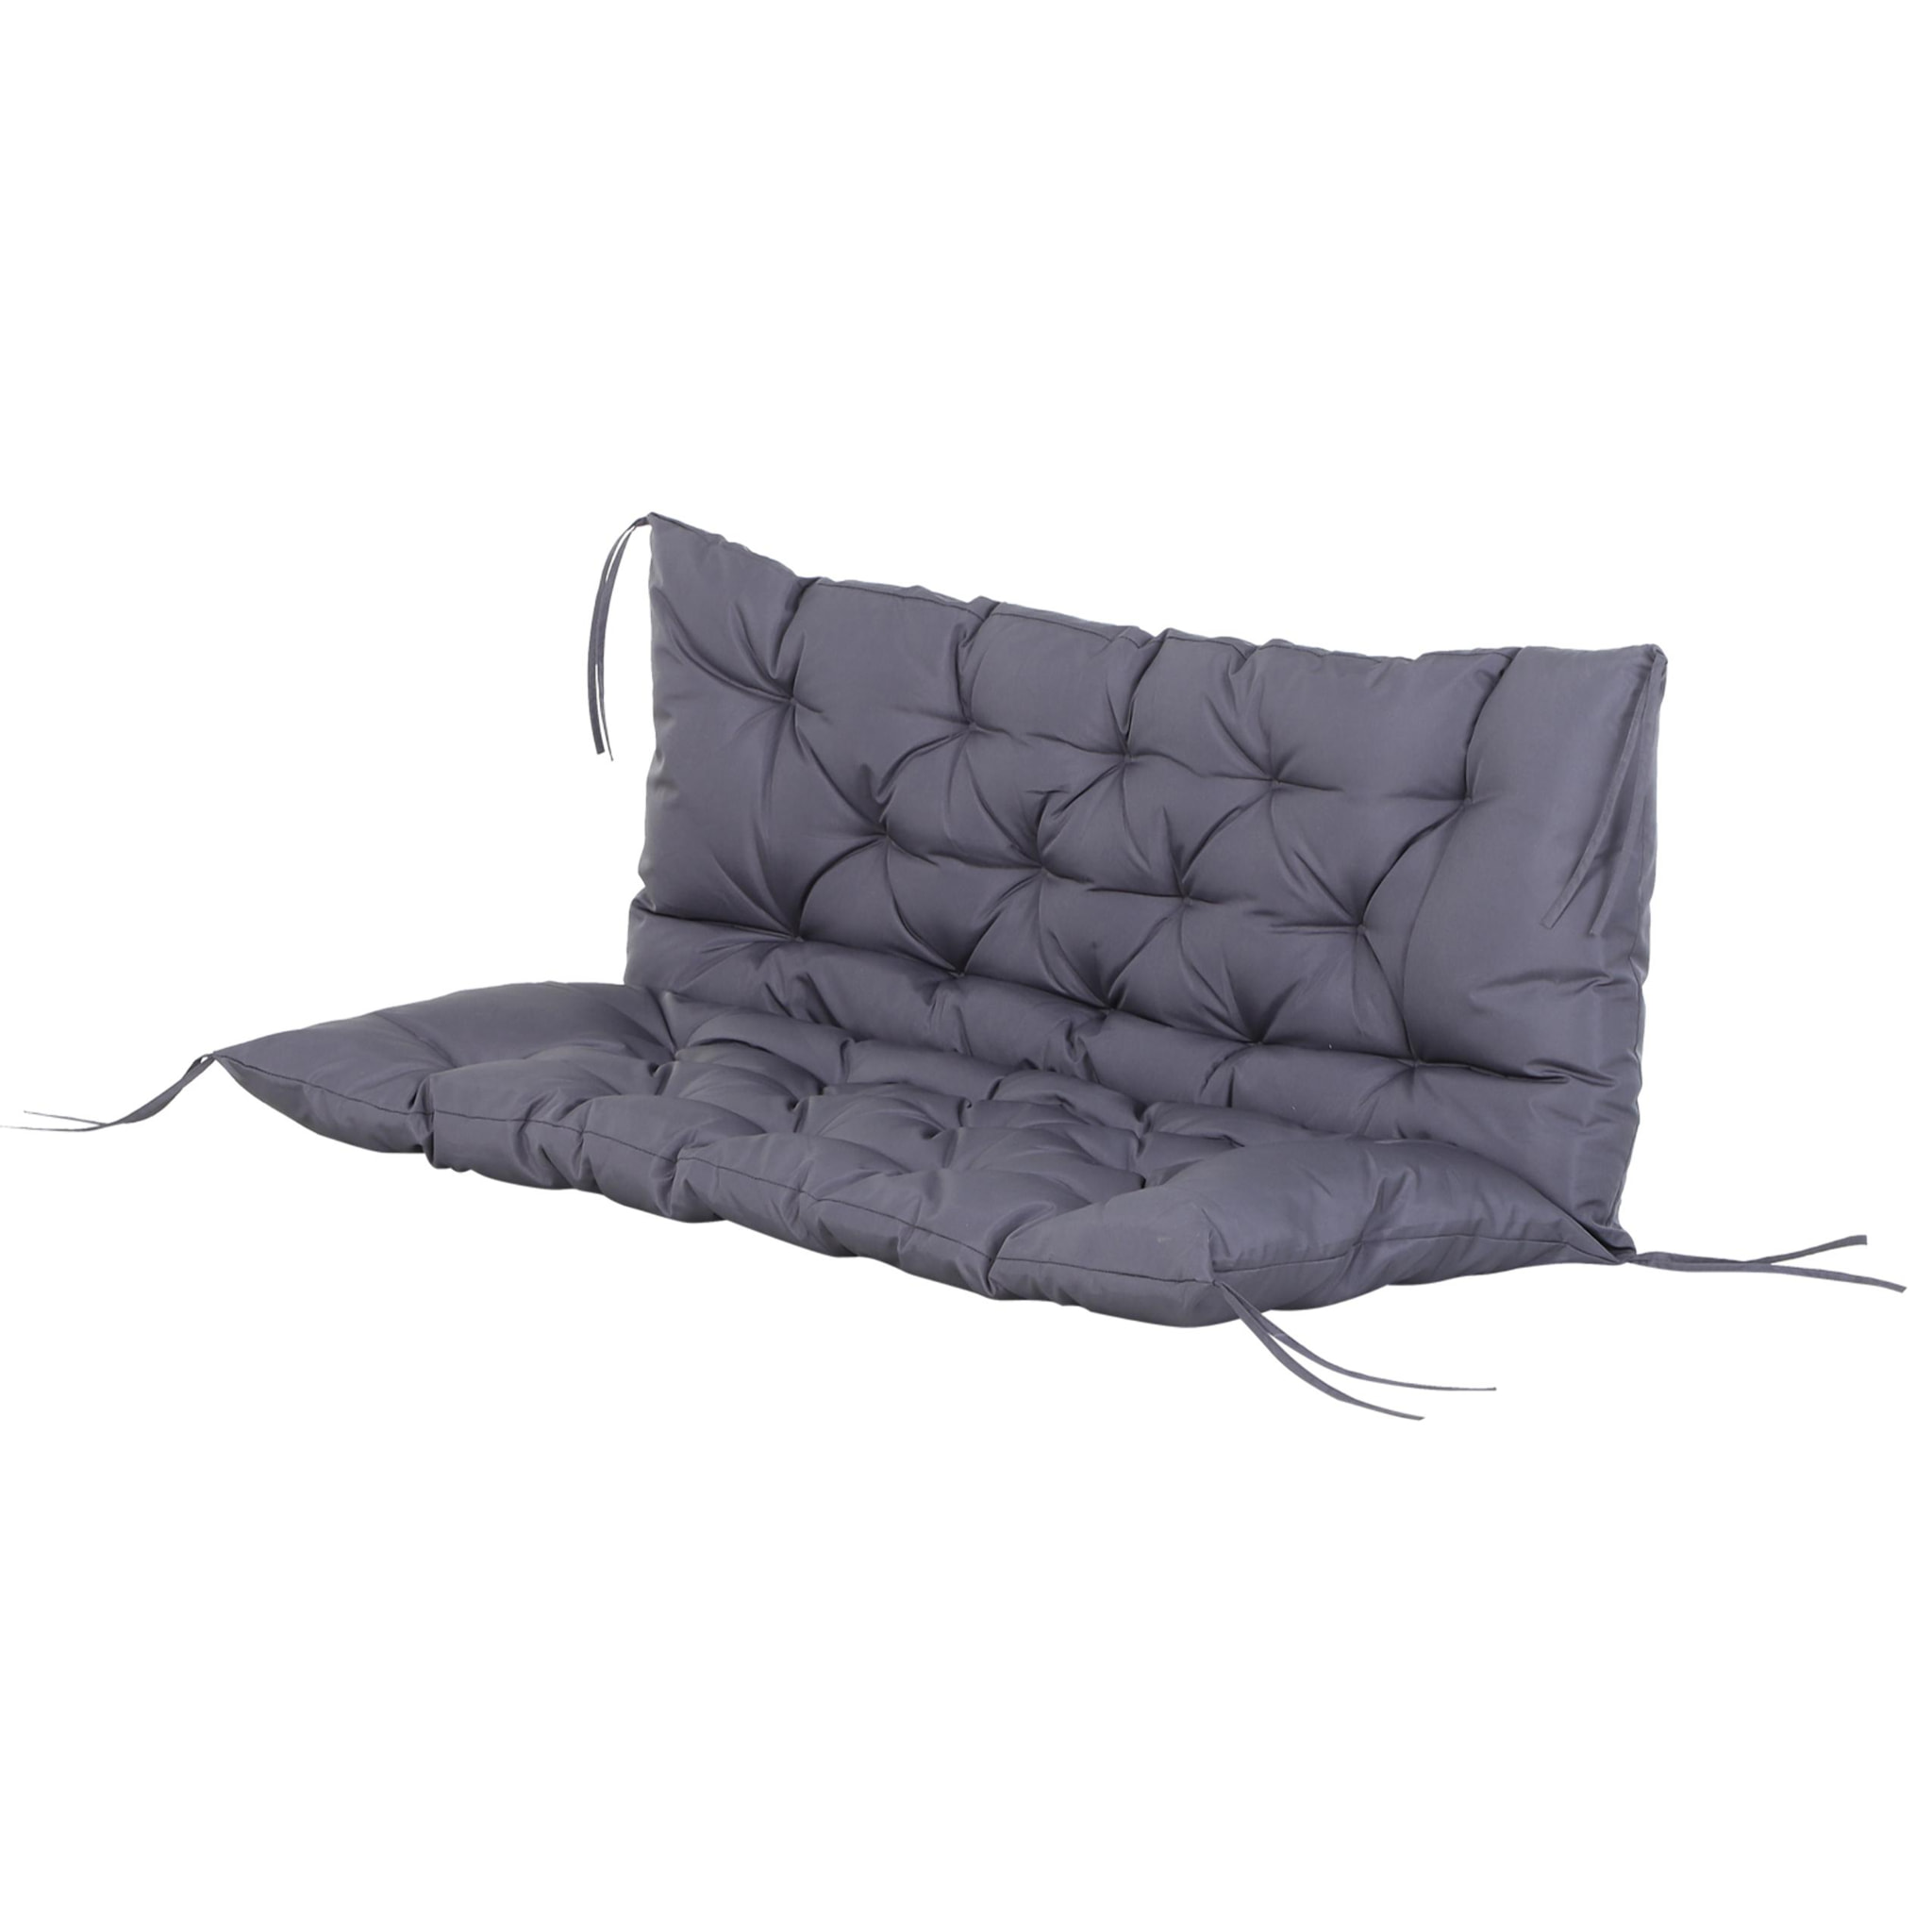 Coussin matelas assise dossier pour banc de jardin balancelle canapé 2 places grand confort 120 x 110 x 12 cm gris